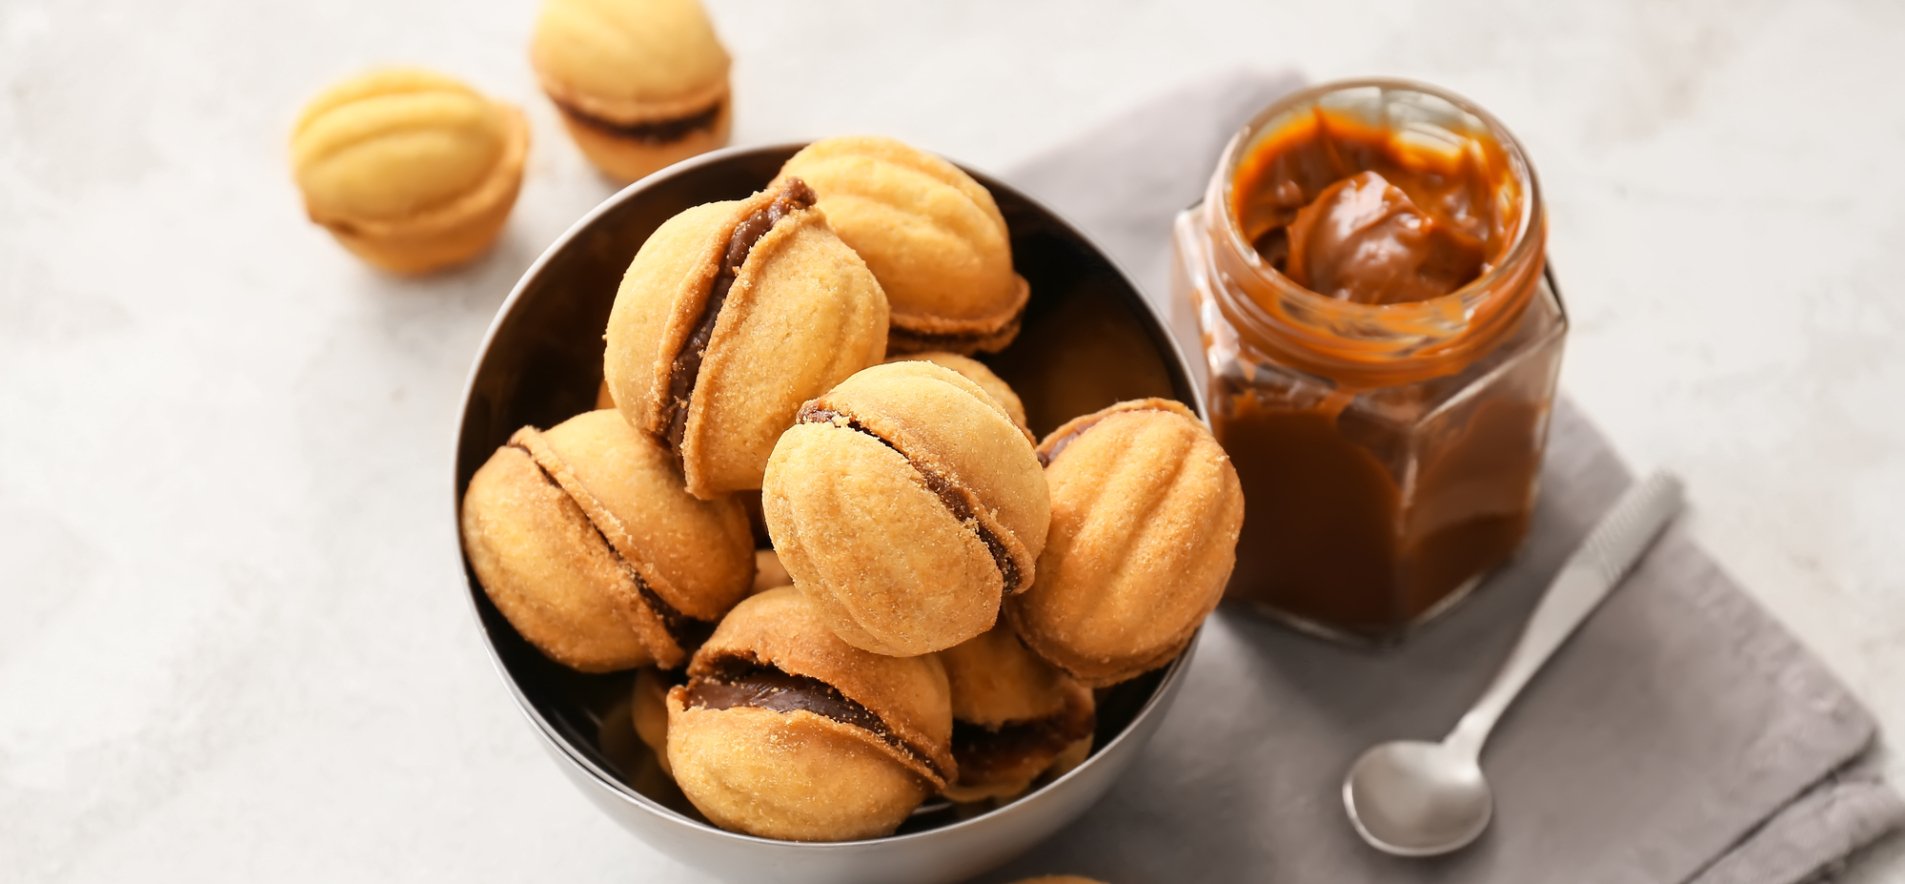 История одной вещи: орешки со сгущенкой — один из самых любимых советских десертов